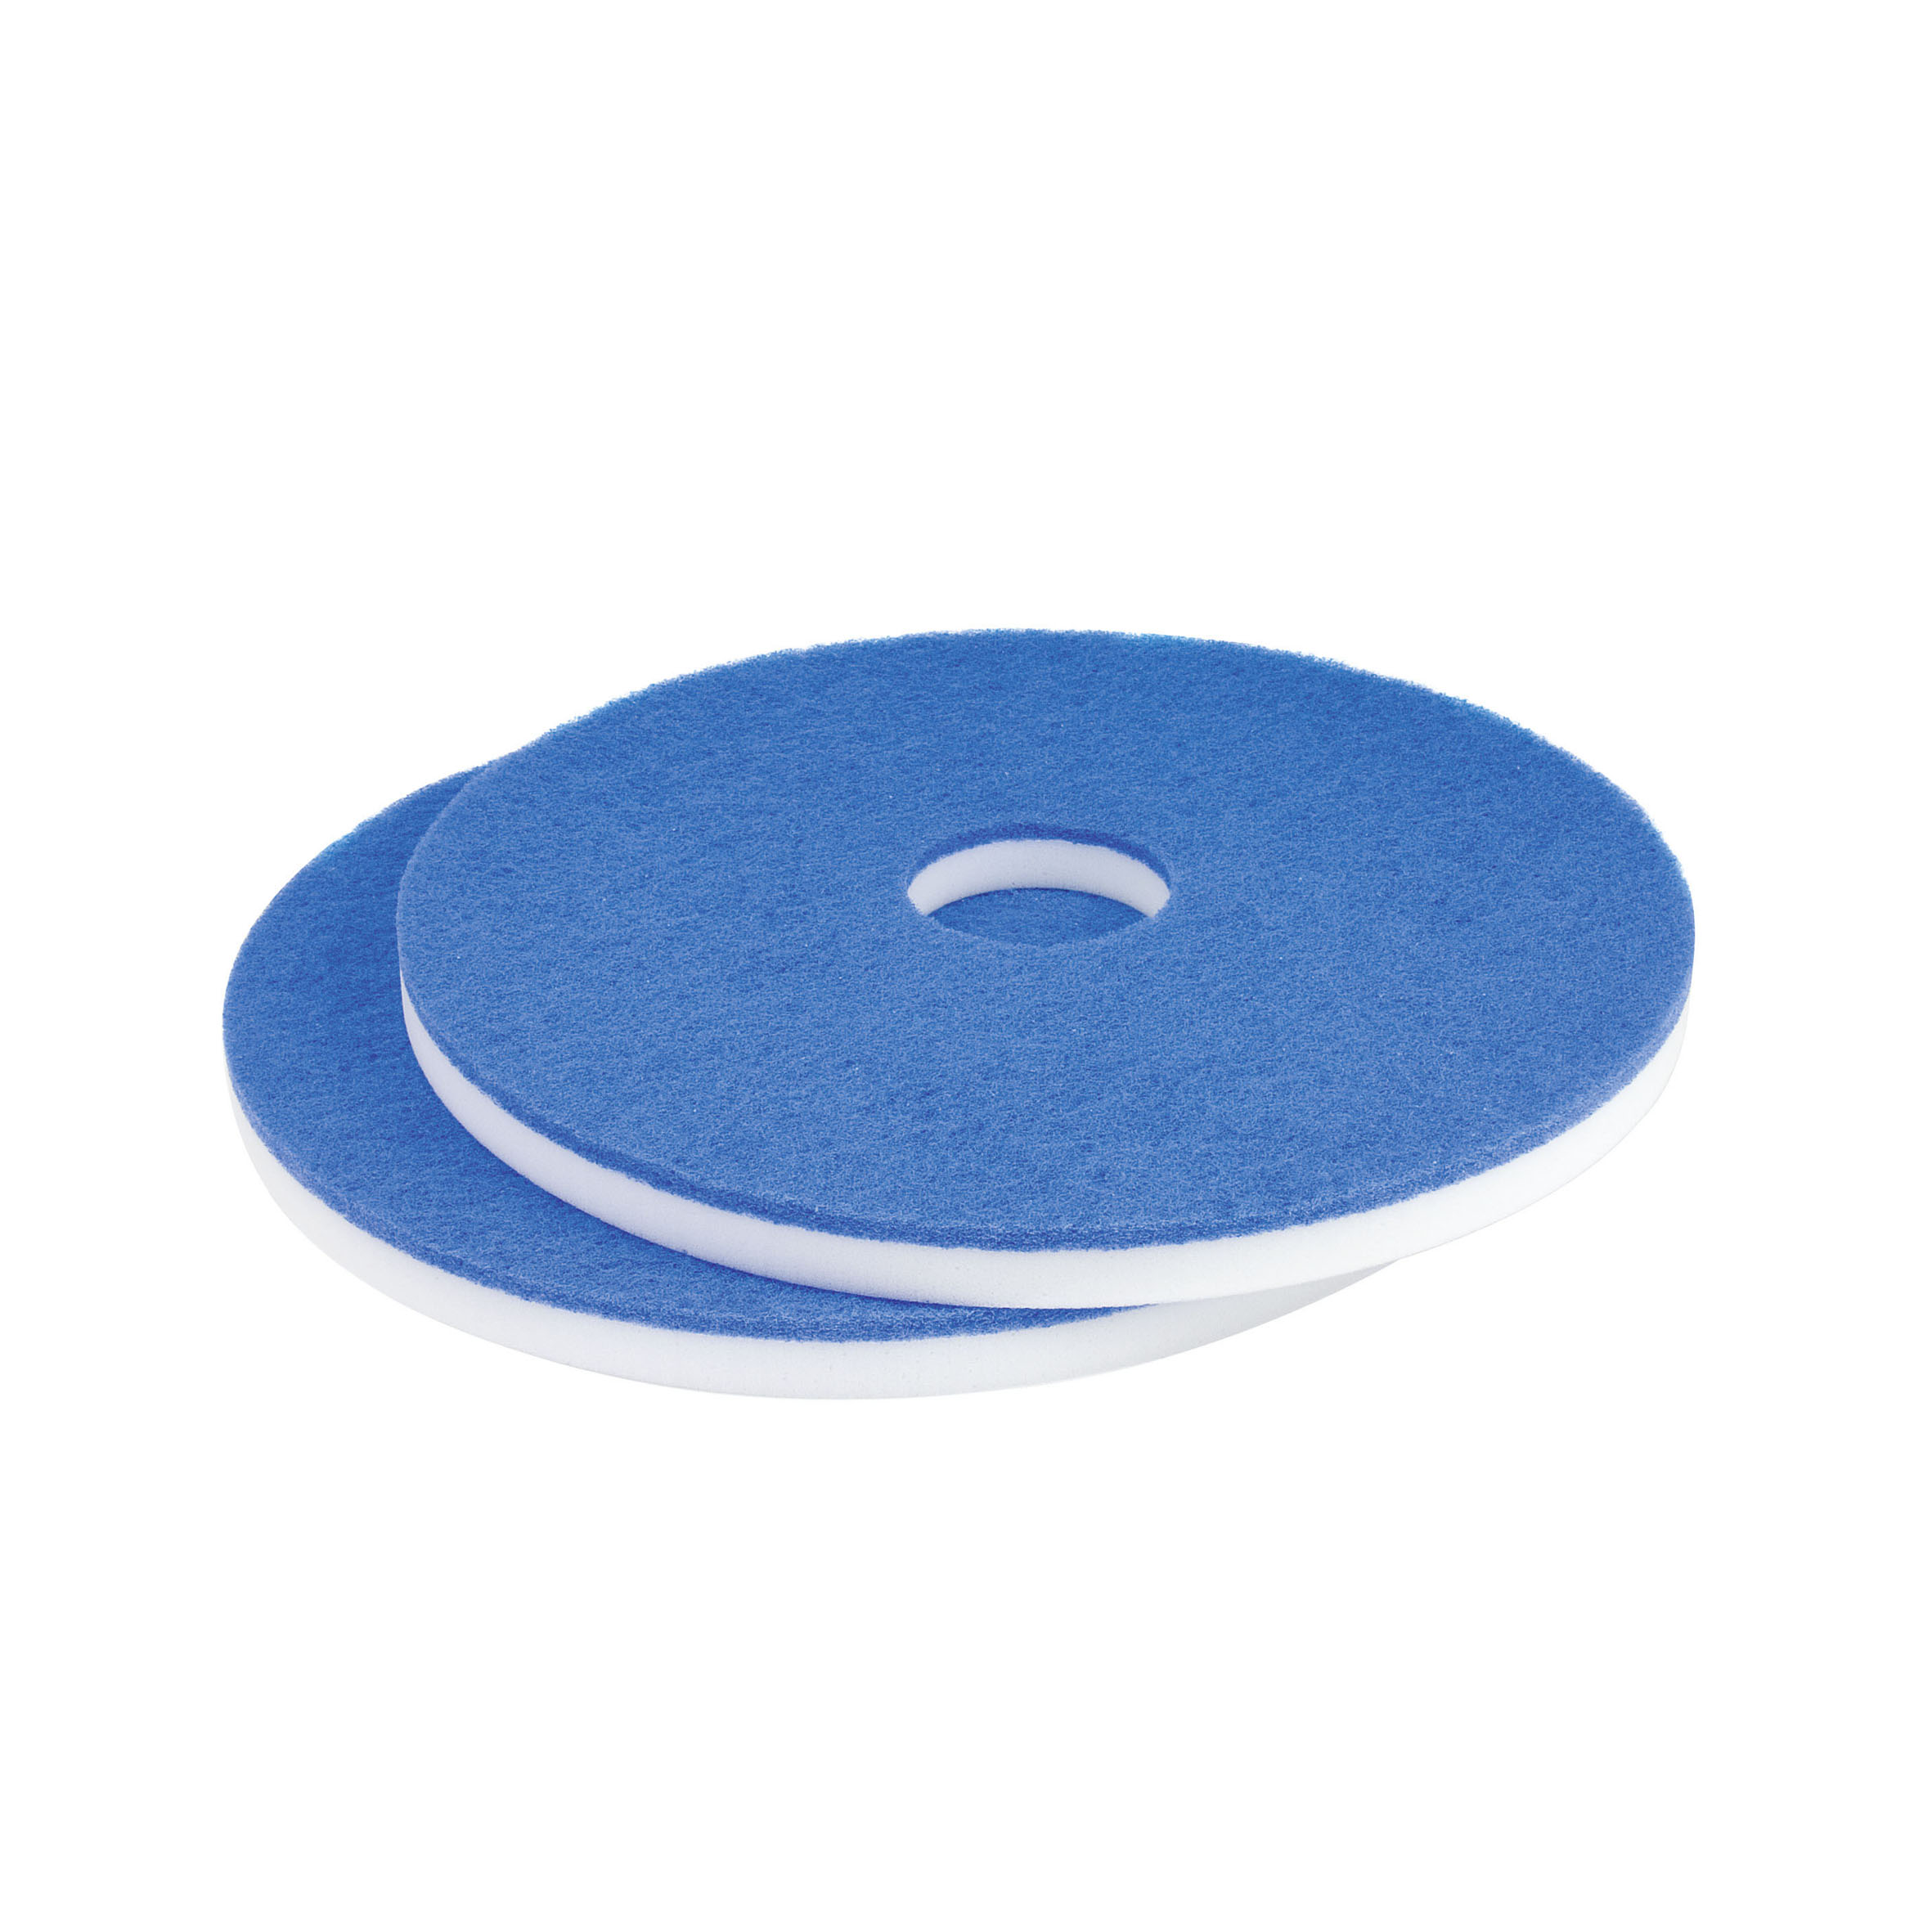 Superpad "MELAMIN" 406 mm / weiß-blau